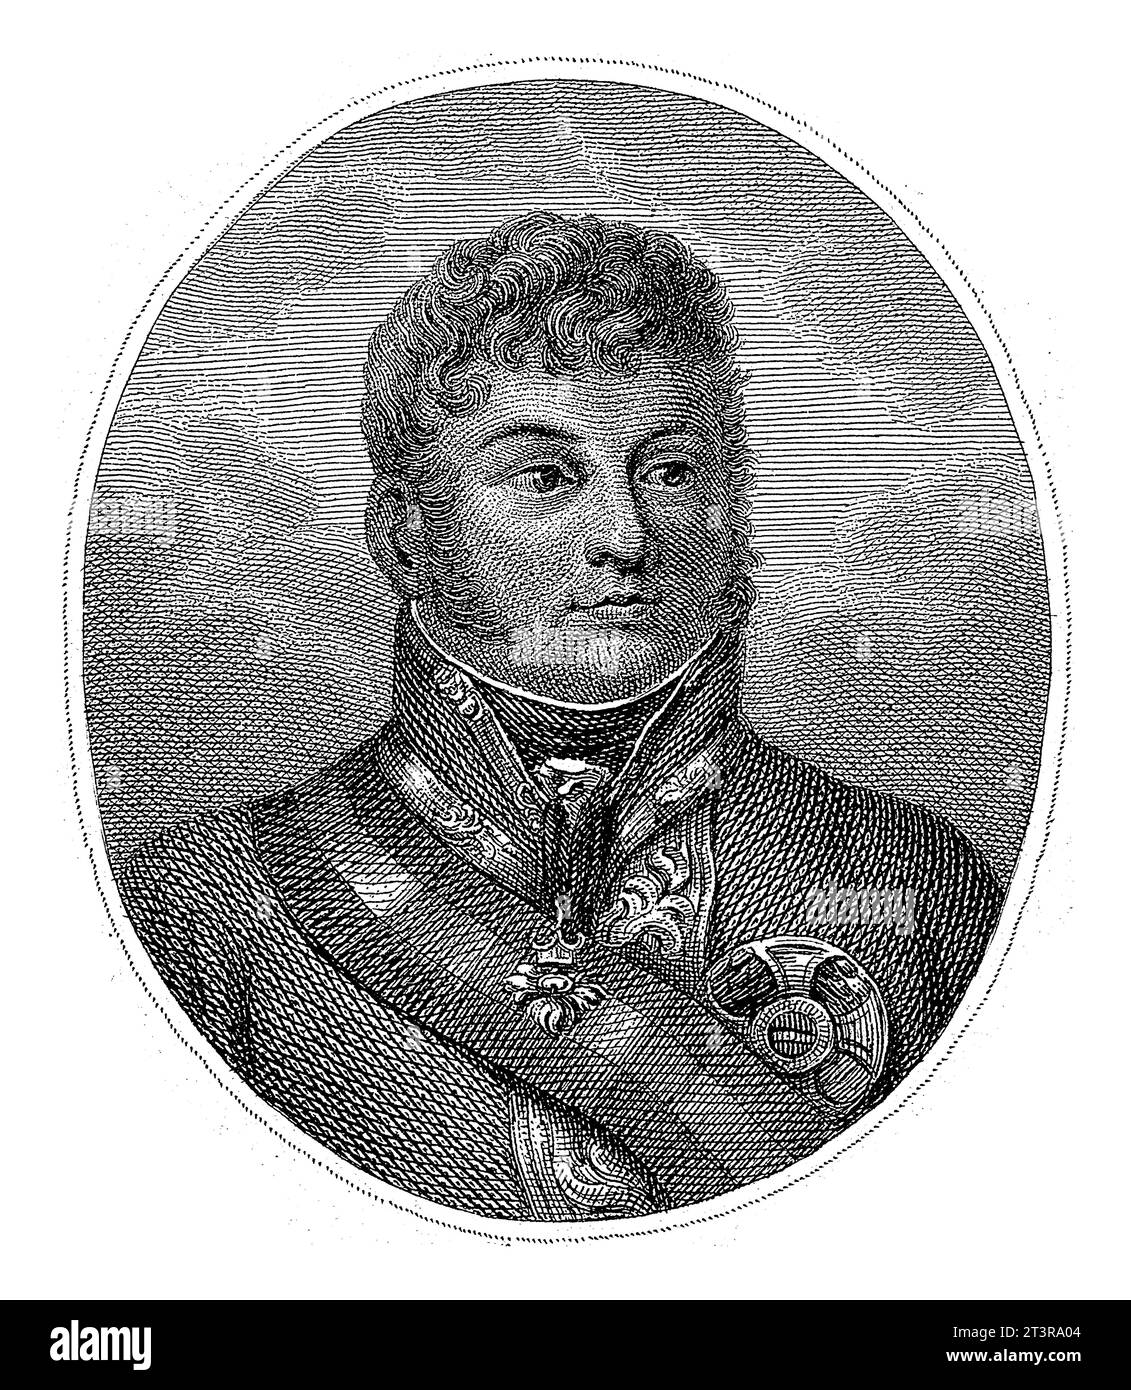 Retrato de Karl Philip zu Schwarzenberg, Guillermo de Senus, 1783 - 1851 Retrato del mariscal de campo austriaco Karl Philip zu Schwarzenberg. Foto de stock